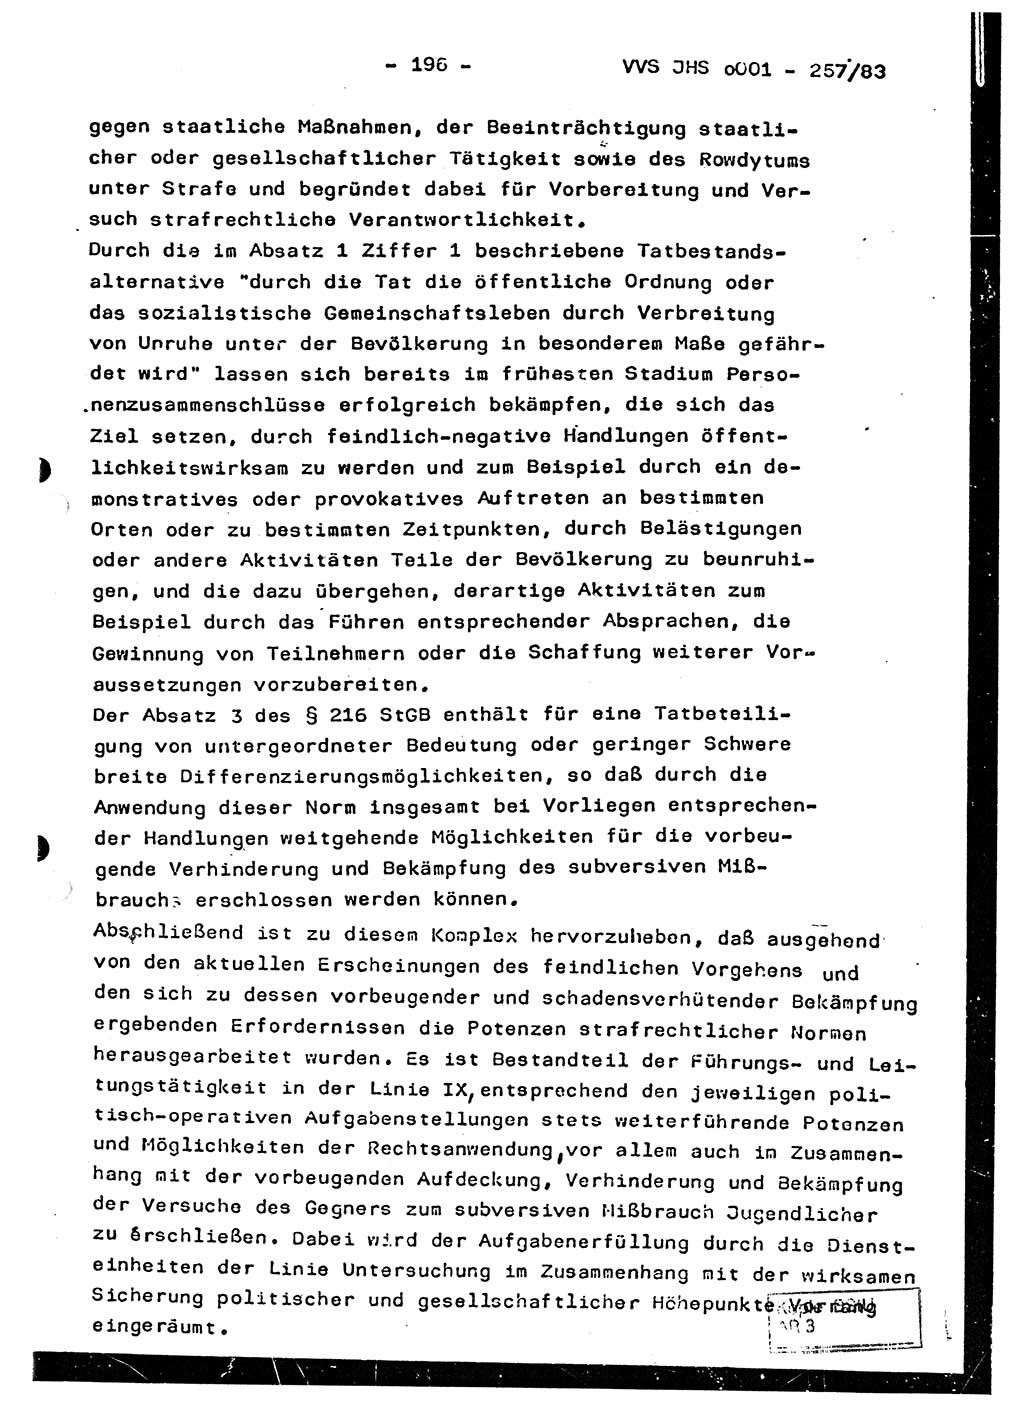 Dissertation, Oberst Helmut Lubas (BV Mdg.), Oberstleutnant Manfred Eschberger (HA IX), Oberleutnant Hans-Jürgen Ludwig (JHS), Ministerium für Staatssicherheit (MfS) [Deutsche Demokratische Republik (DDR)], Juristische Hochschule (JHS), Vertrauliche Verschlußsache (VVS) o001-257/83, Potsdam 1983, Seite 196 (Diss. MfS DDR JHS VVS o001-257/83 1983, S. 196)